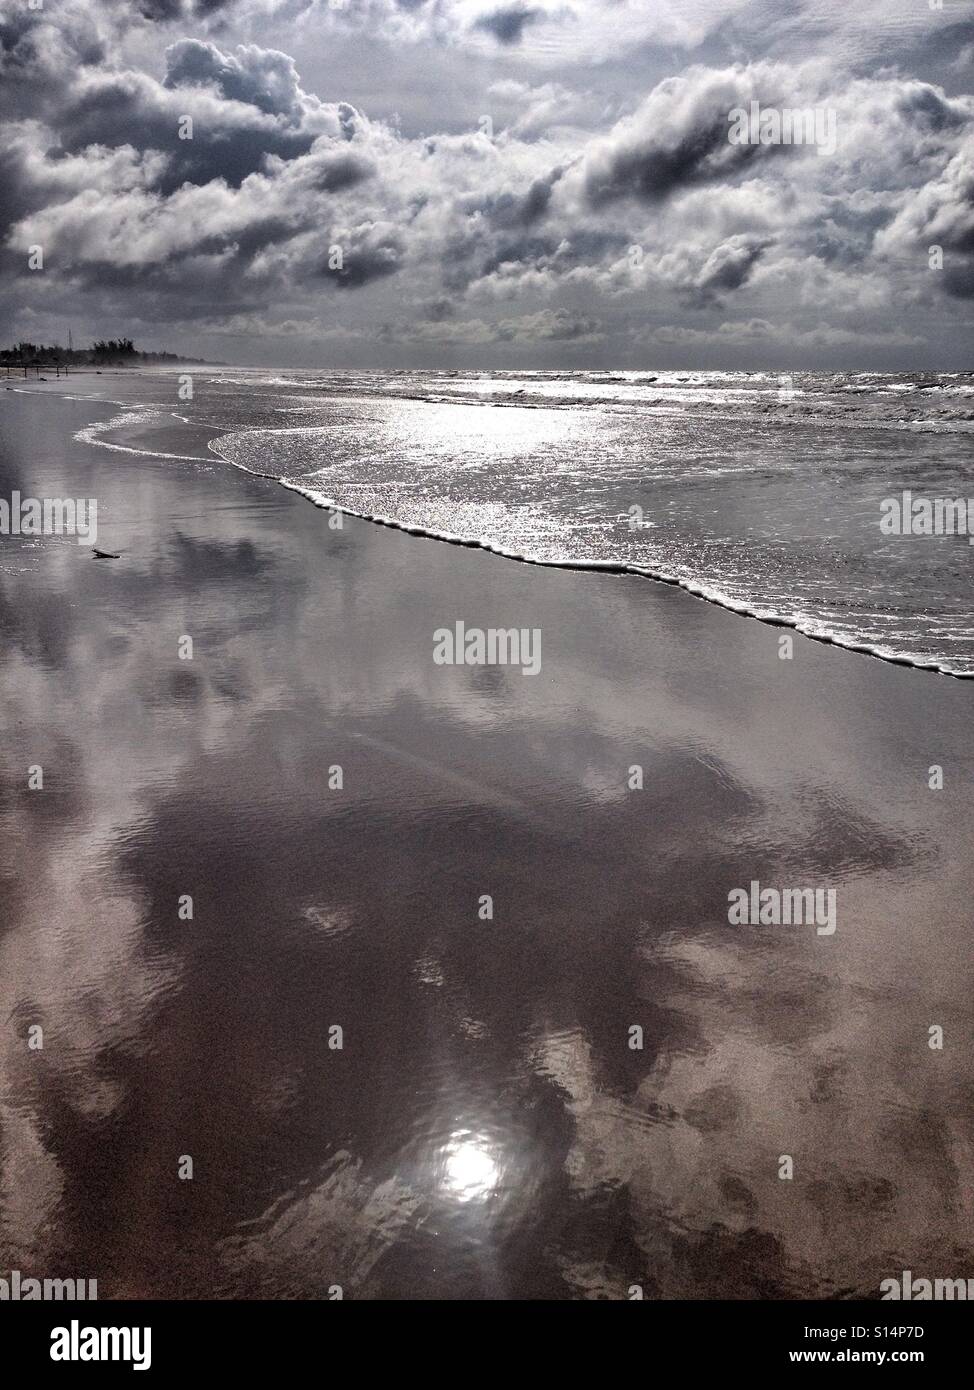 Sabbia bagnata lungo la riva del mare si riflette la luce del sole, come le onde si inclinano indietro nell'oceano, sotto il bianco soffice e cielo molto nuvoloso Foto Stock